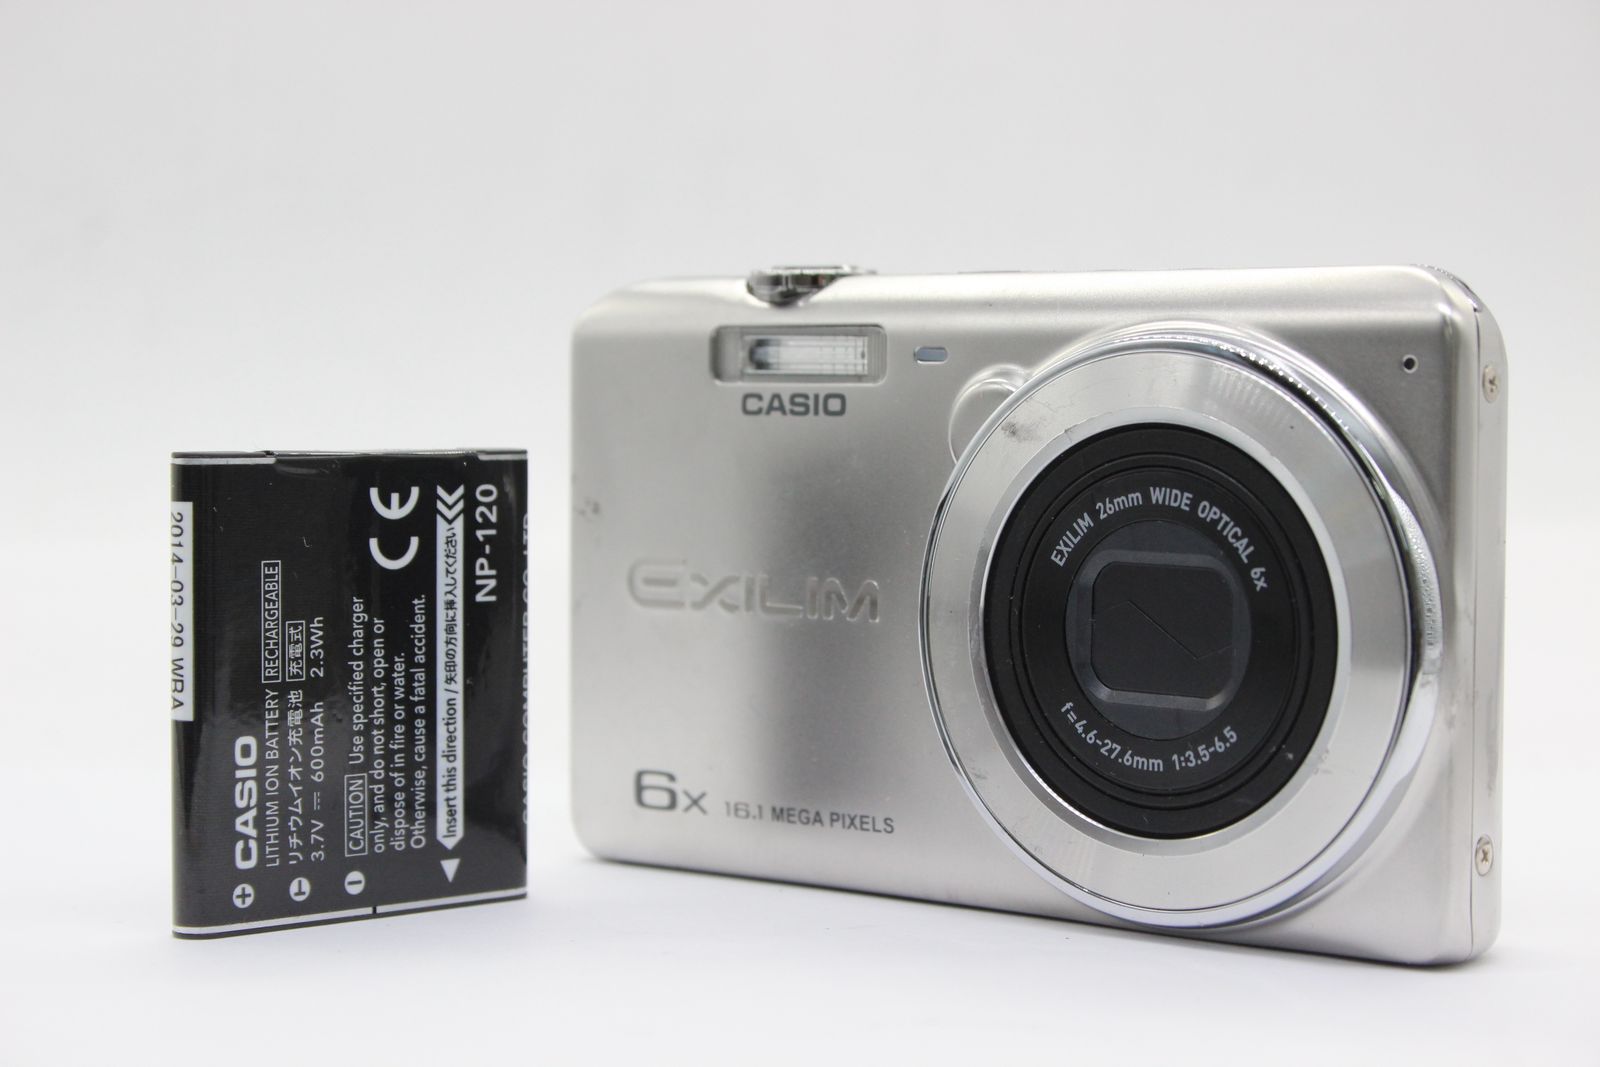 CASIO コンパクトデジカメ EXILIM 6x - デジタルカメラ